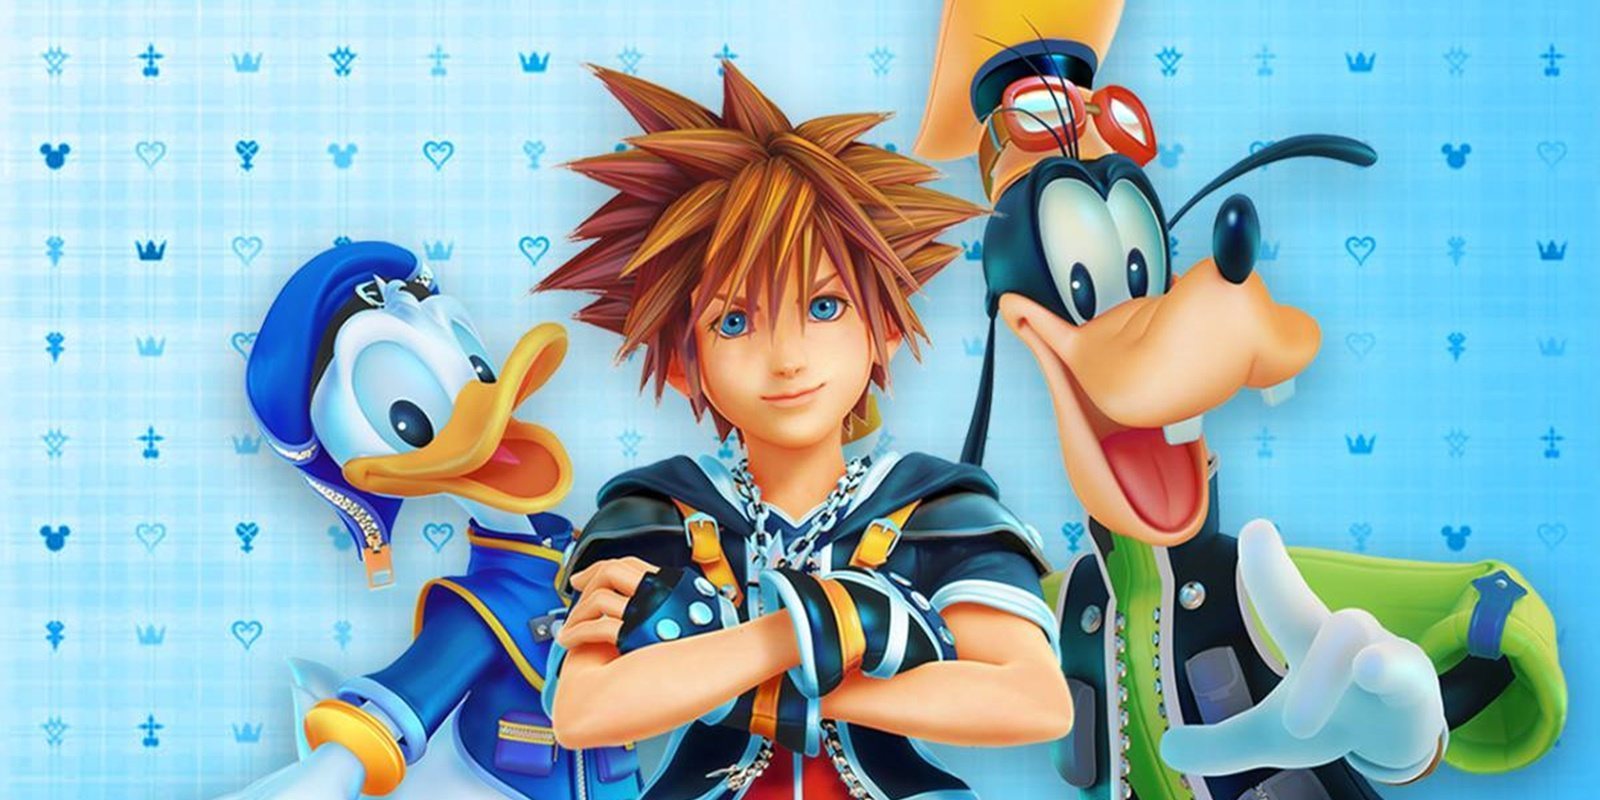 La saga completa de Kingdom Hearts llega a Xbox One